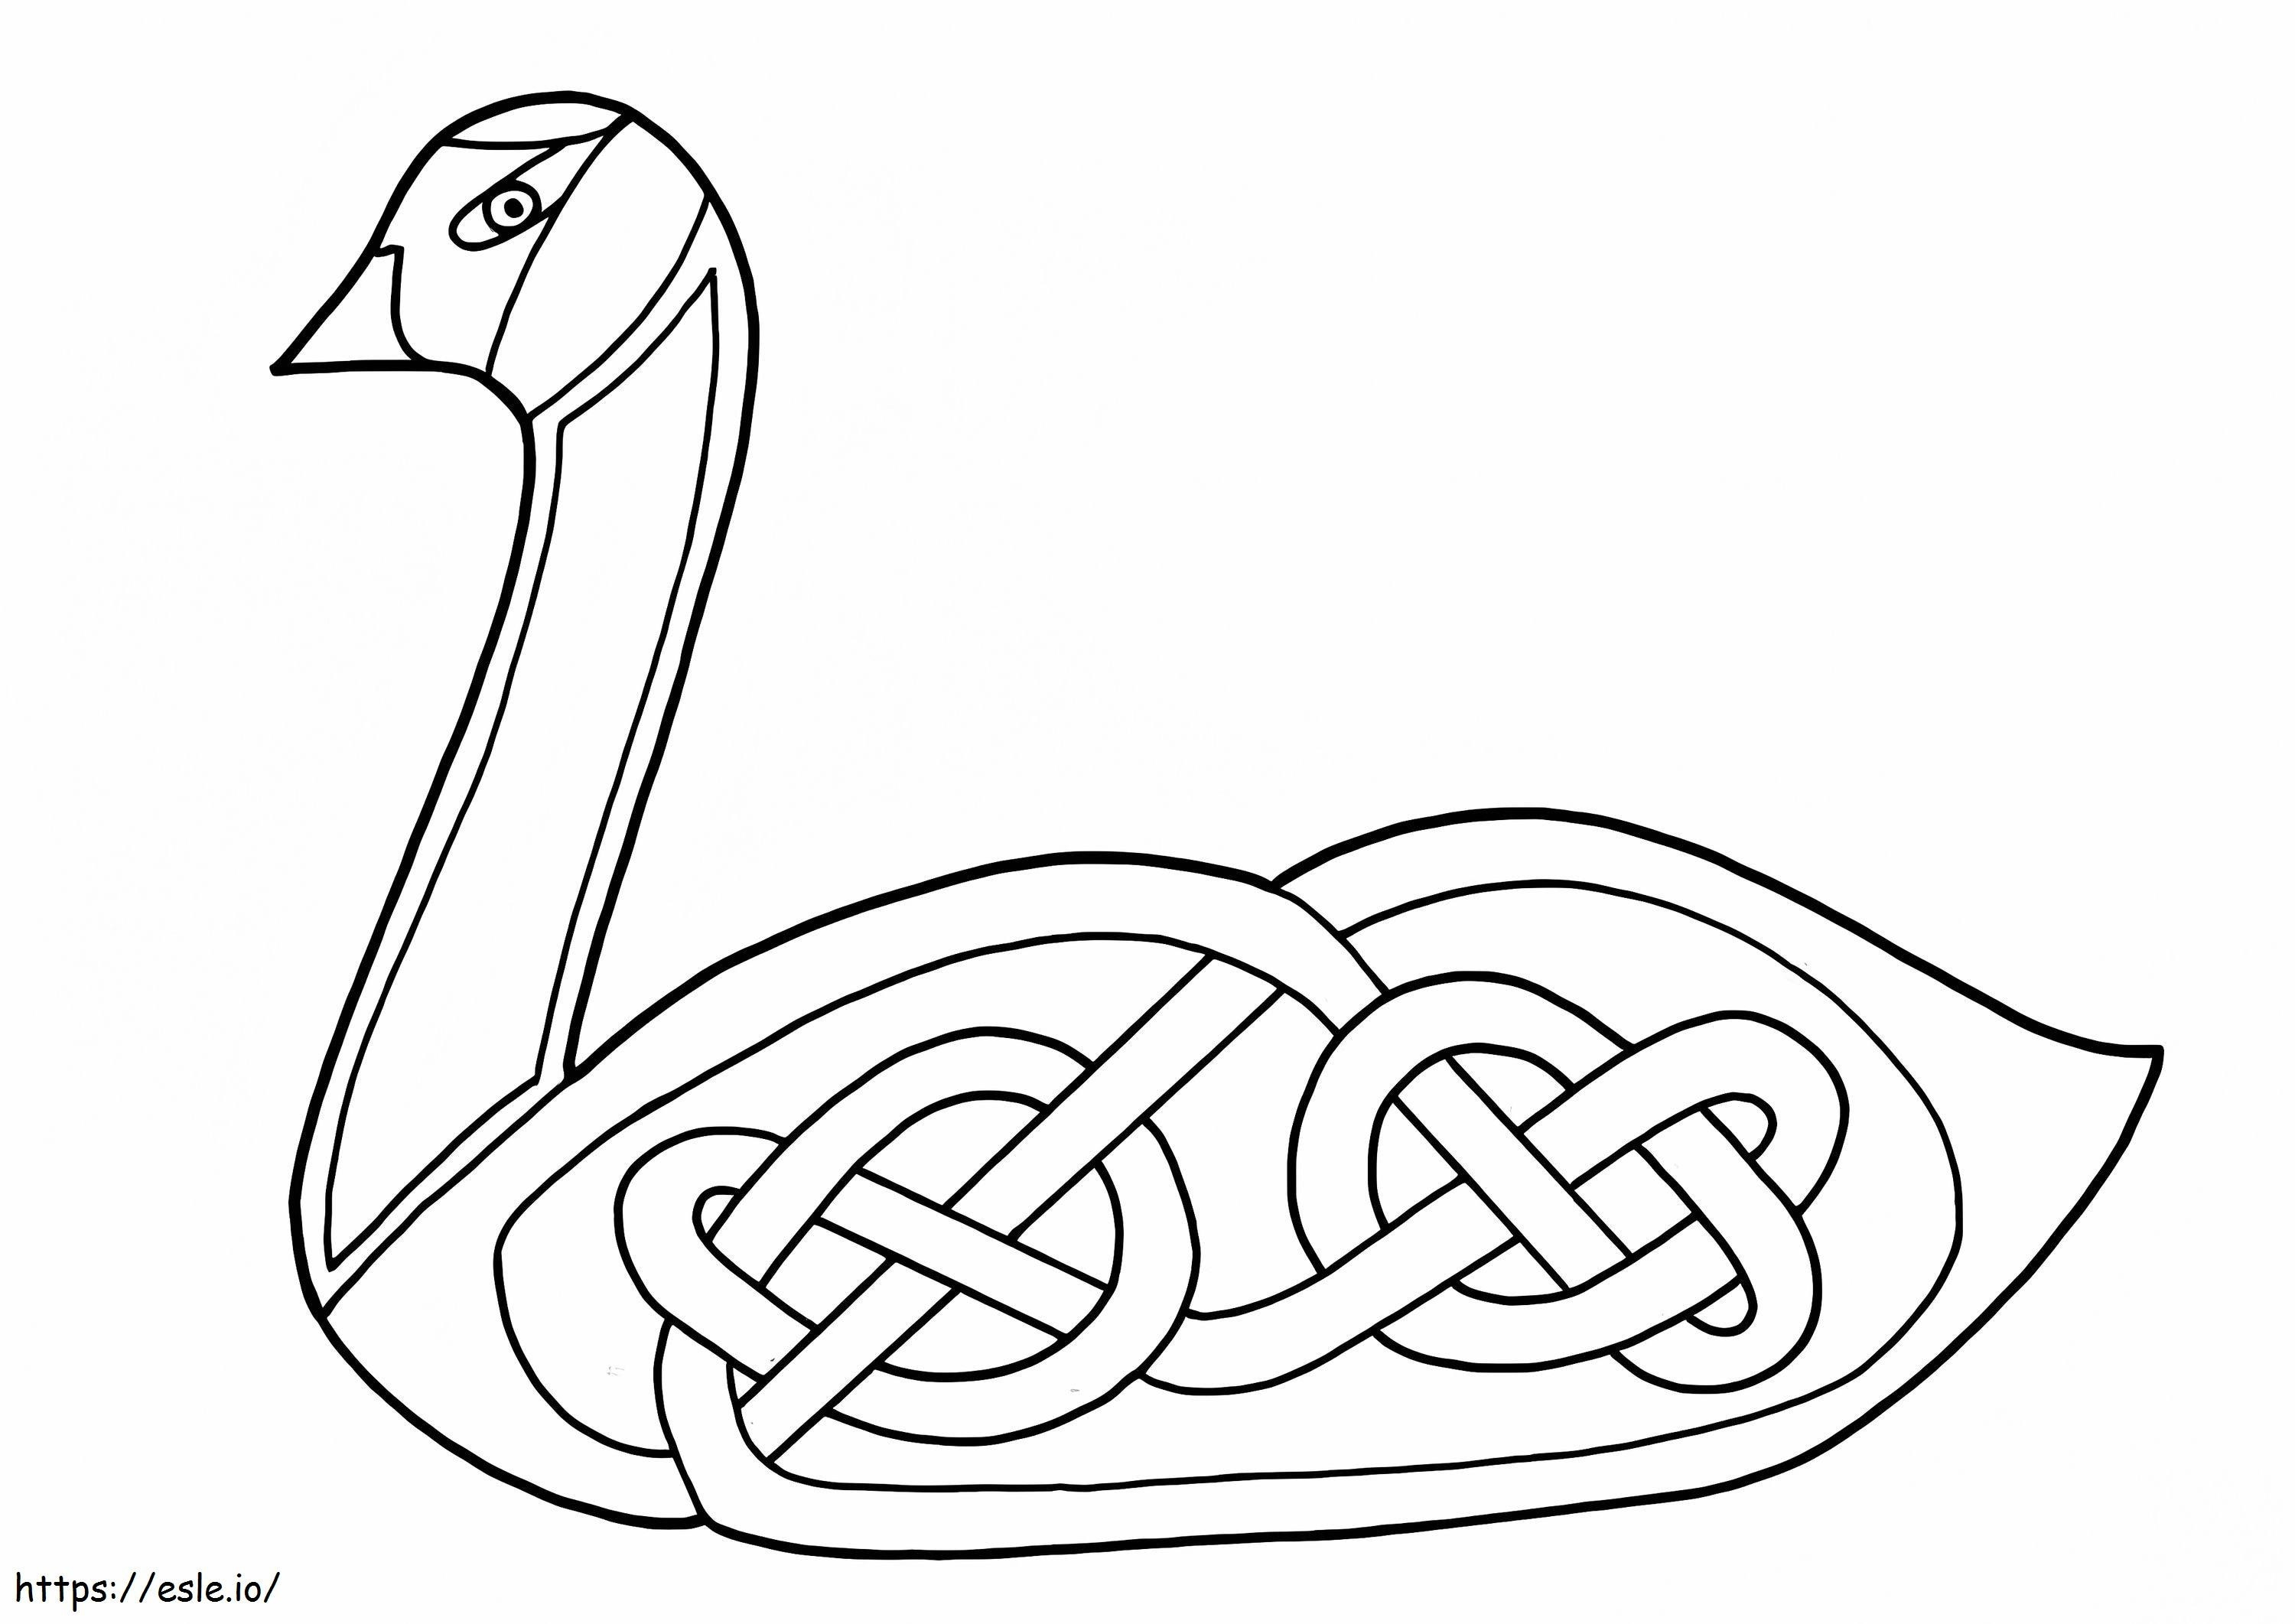 Keltisches Schwan-Design ausmalbilder